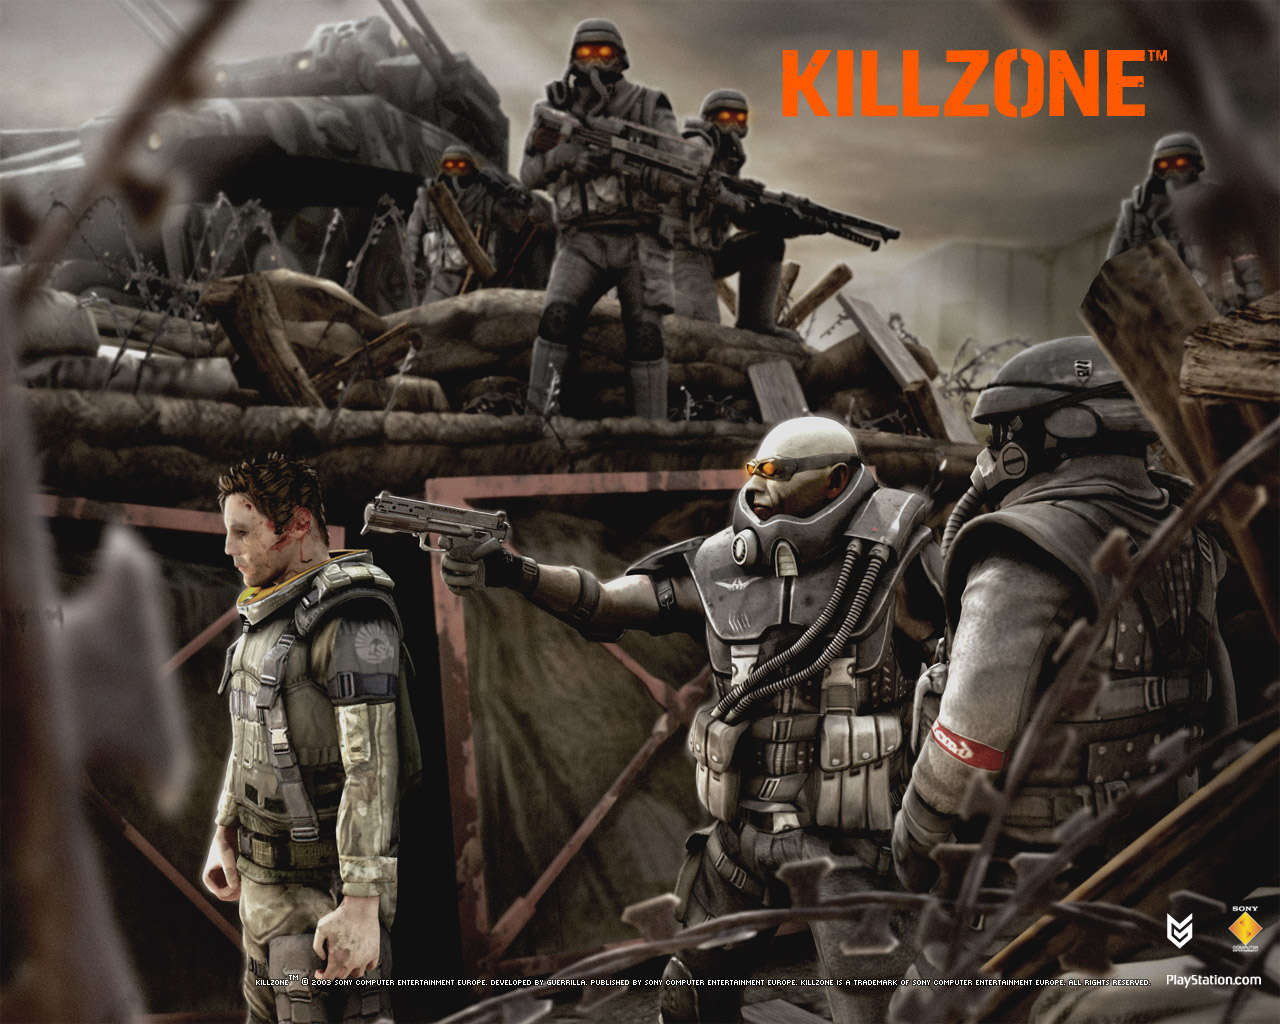 KillZone 3